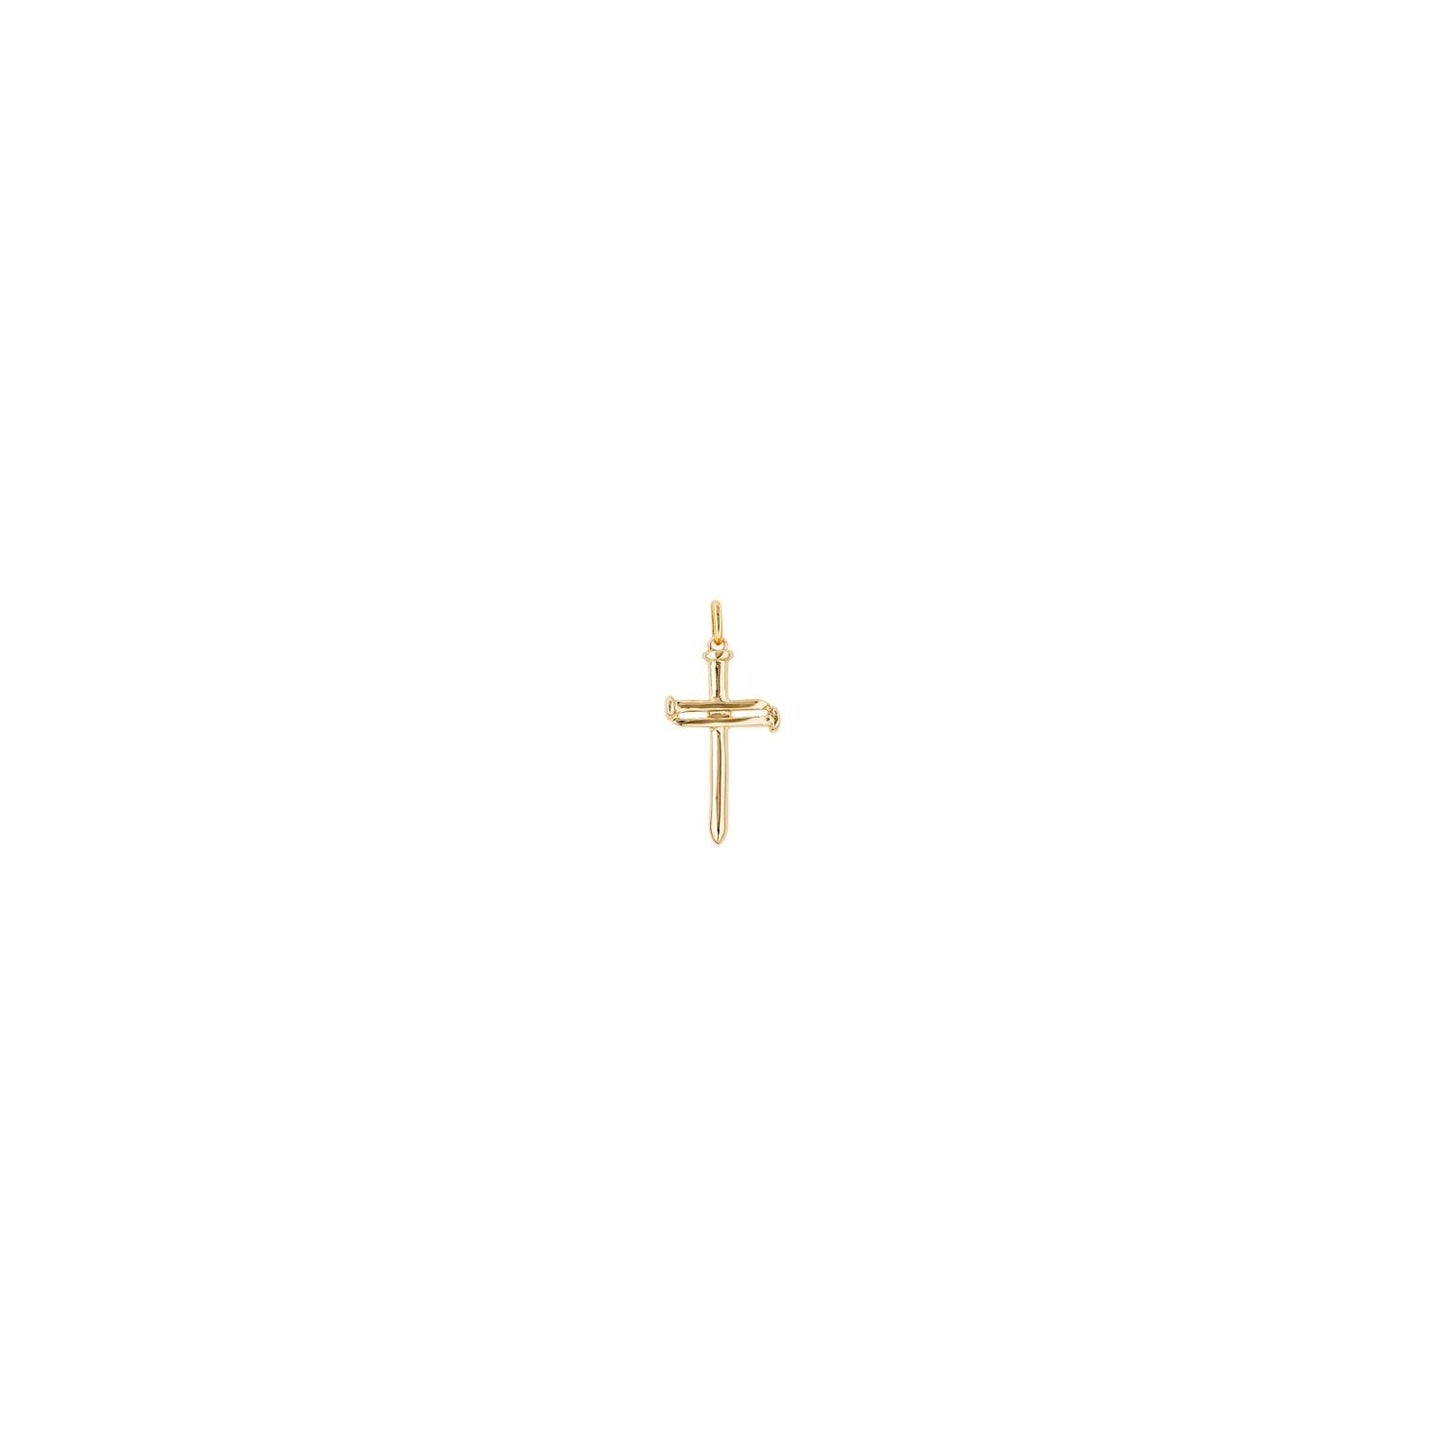 Cruz Grande (Large Cross) | Uno de 50 | Luby 